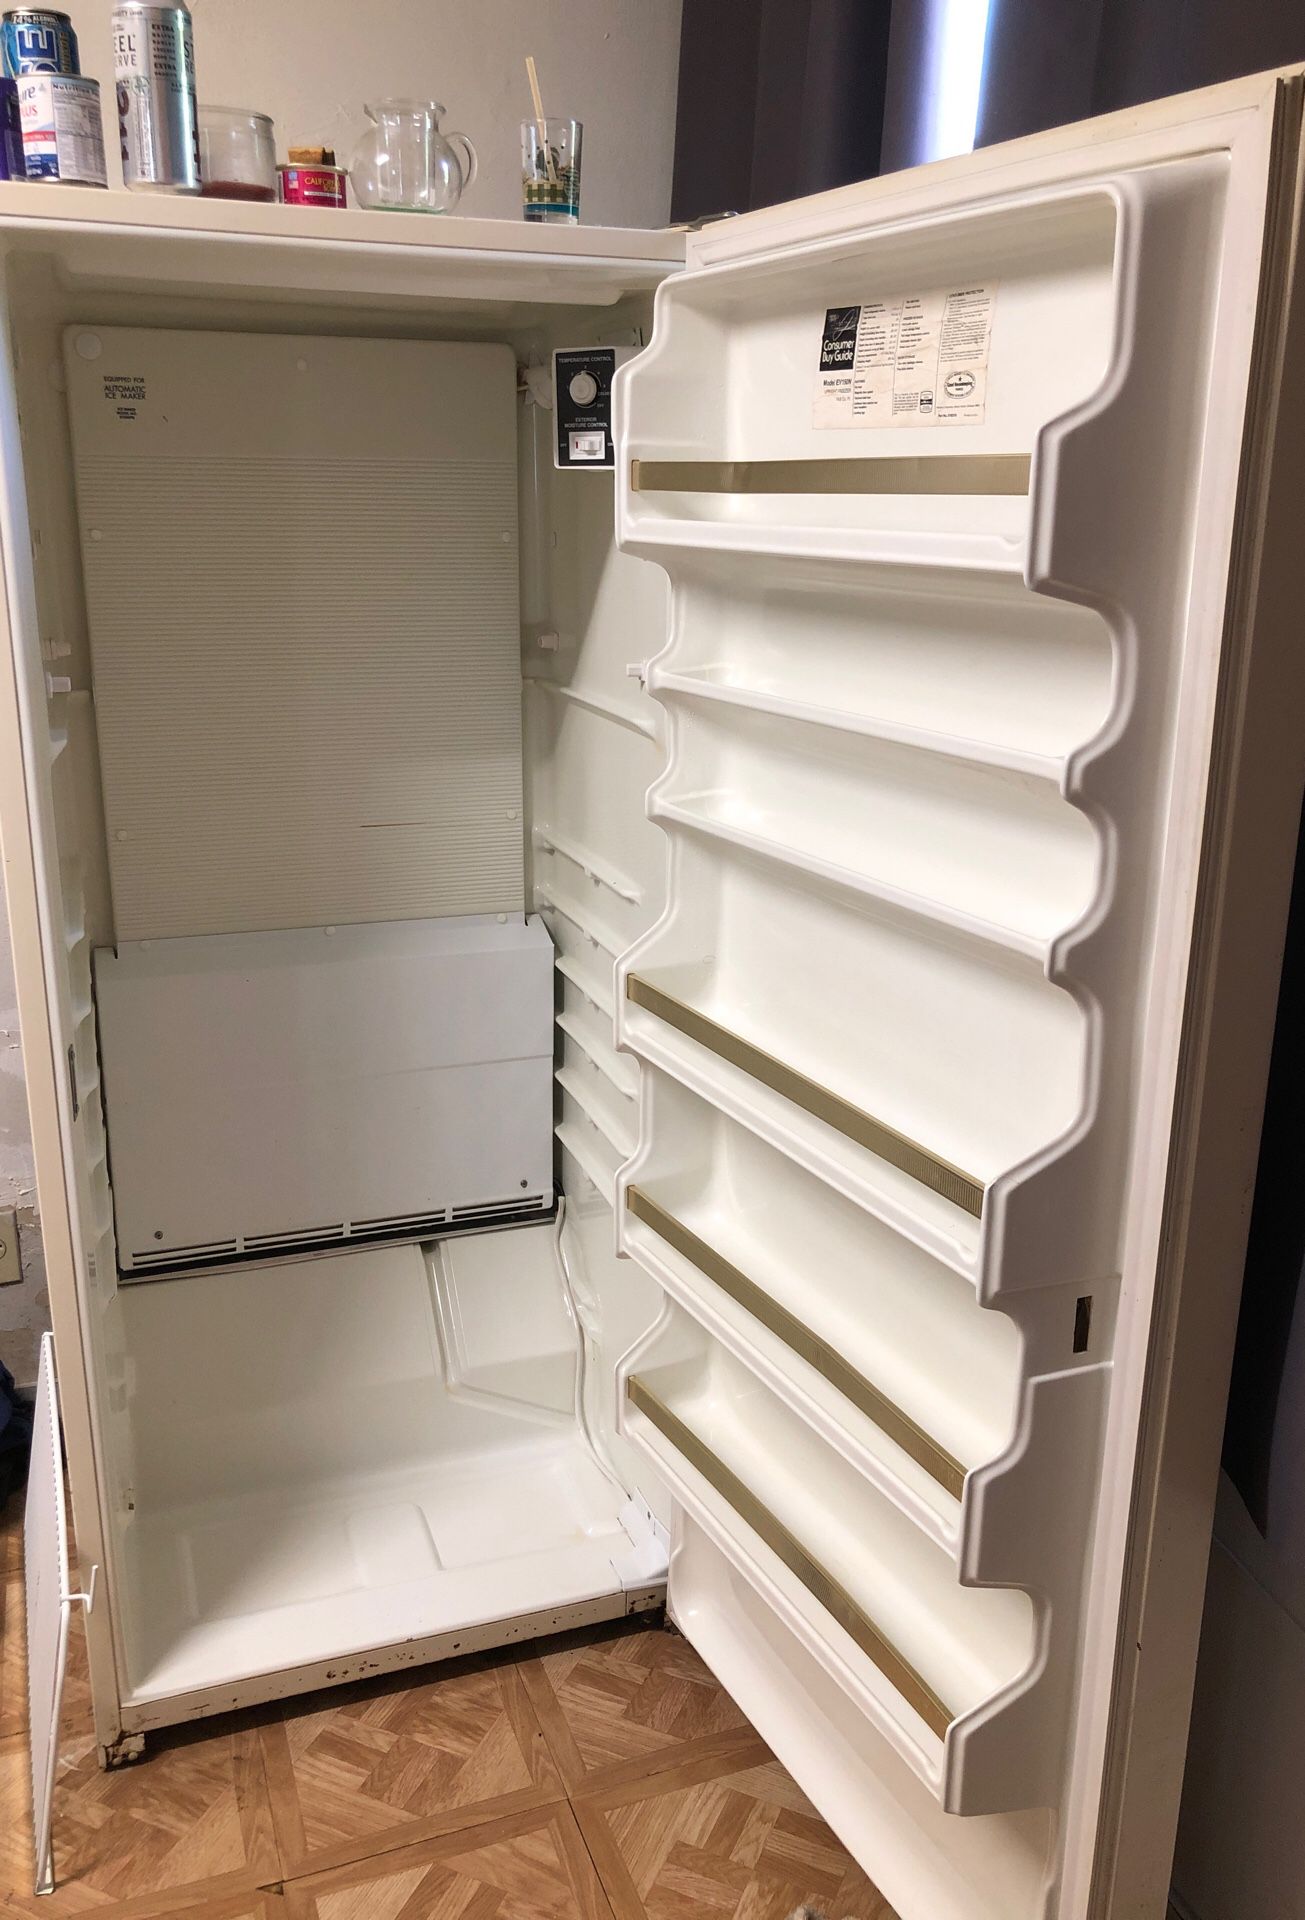 Deep freezer do have the shelves